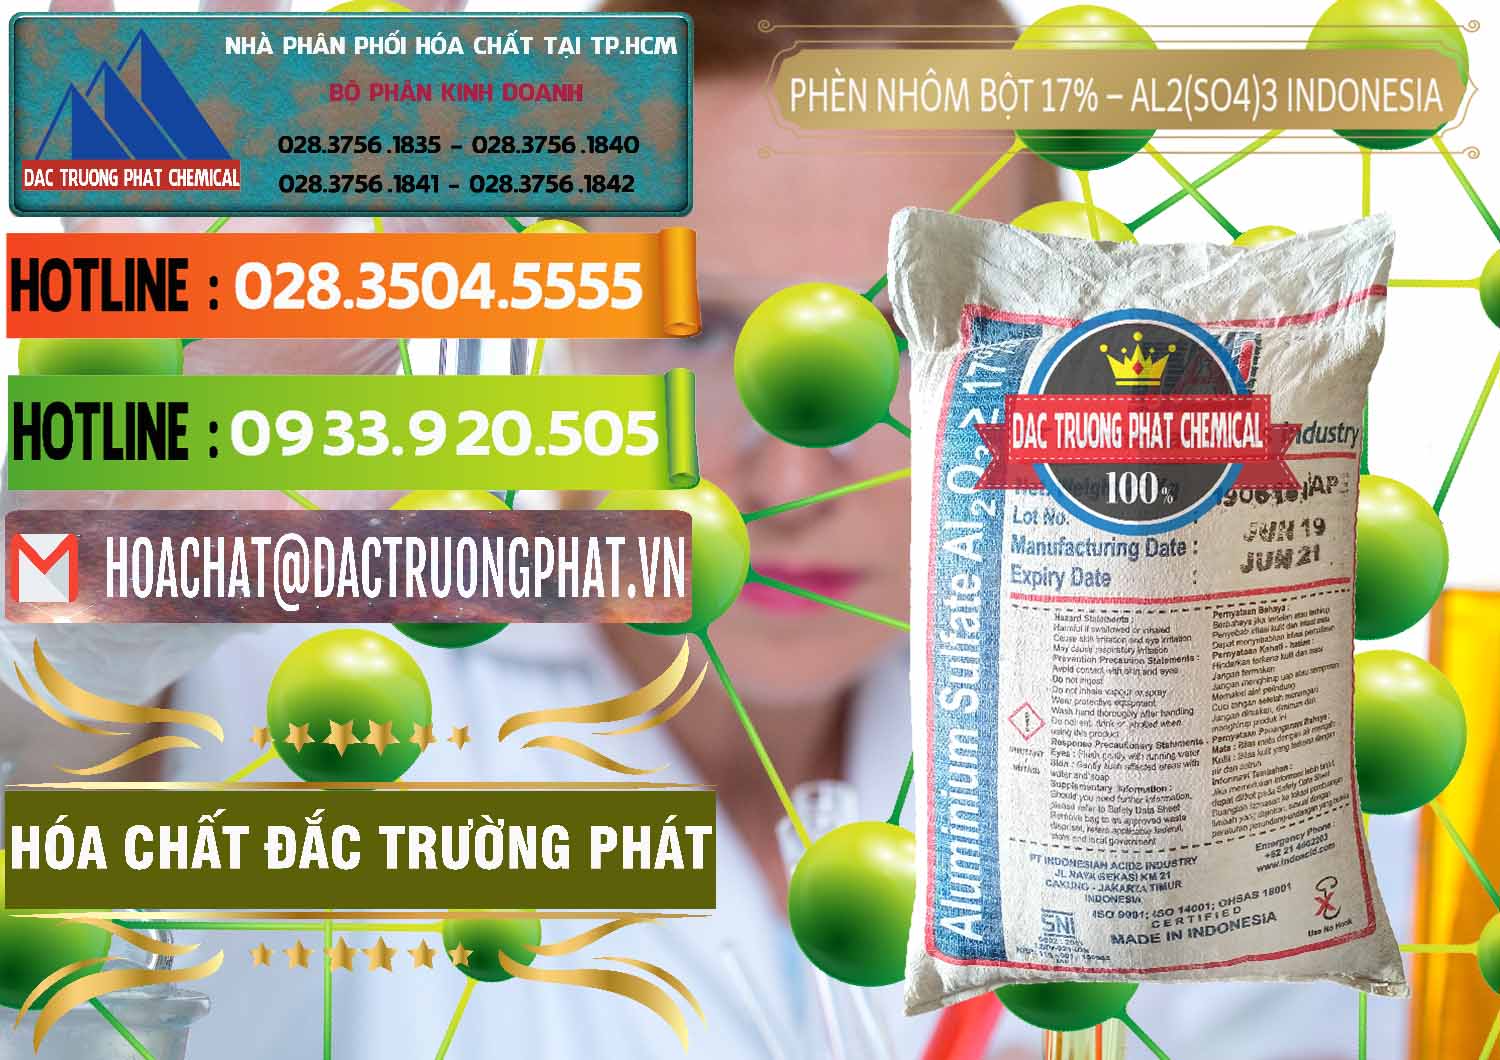 Đơn vị chuyên phân phối _ bán Phèn Nhôm Bột - Al2(SO4)3 17% bao 25kg Indonesia - 0114 - Nơi chuyên cung cấp - kinh doanh hóa chất tại TP.HCM - cungcaphoachat.com.vn